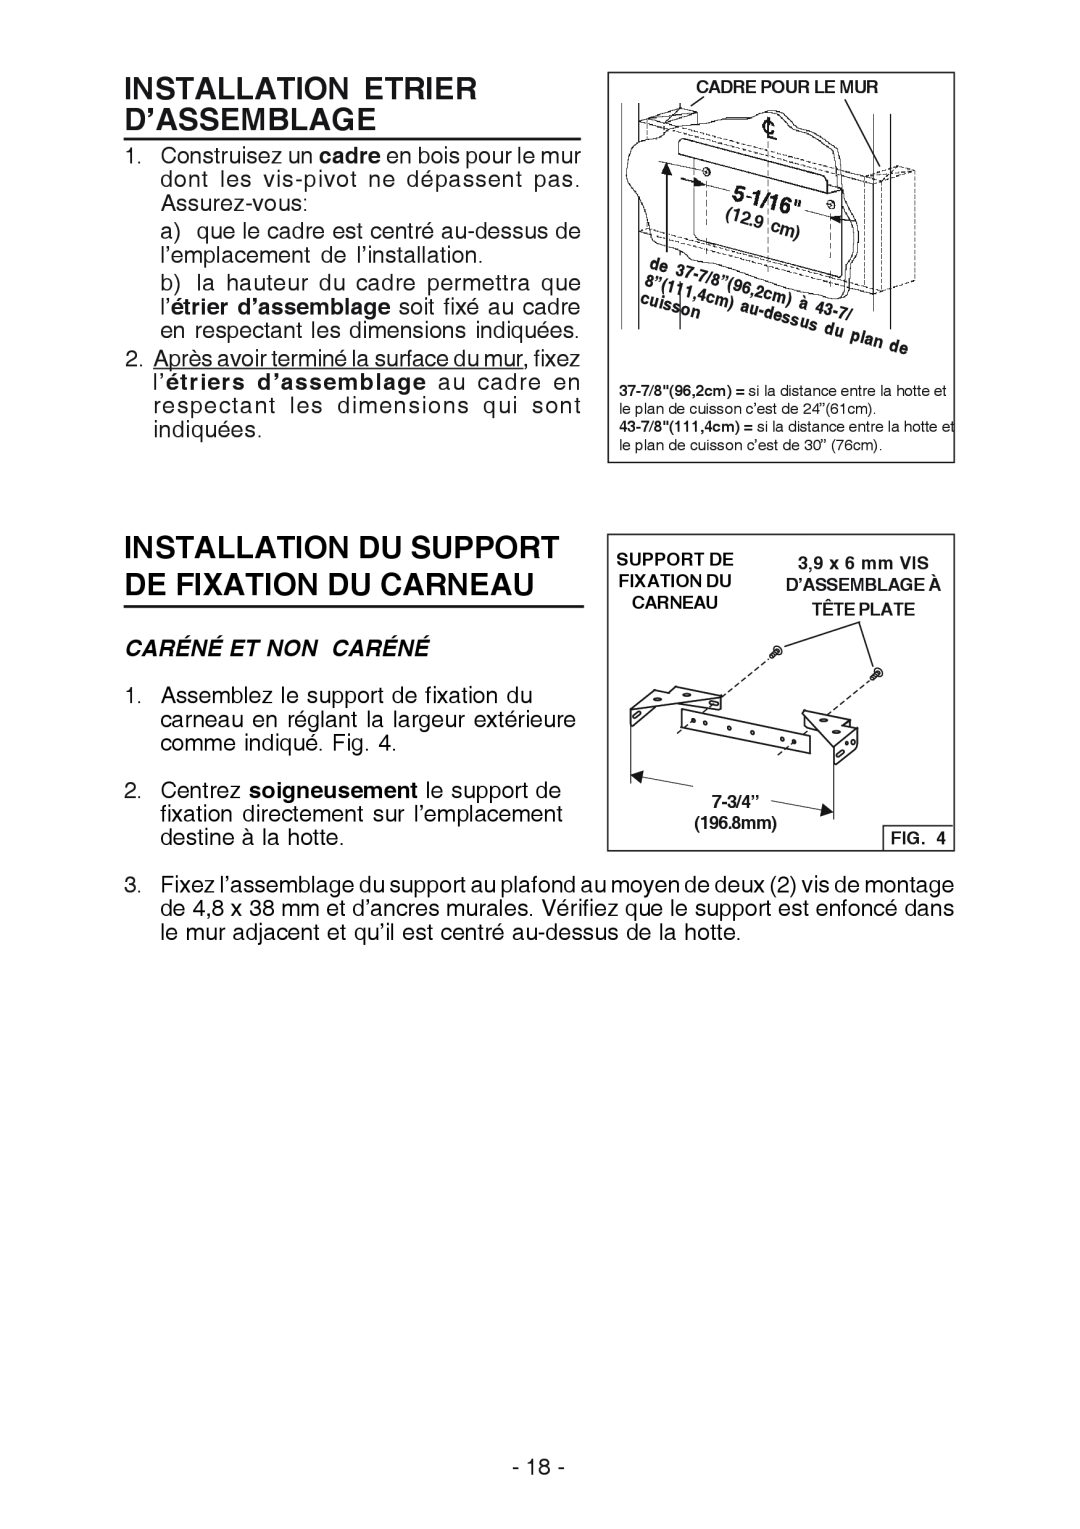 Best K3139 manual Installation Etrier D’Assemblage, Installation Du Support De Fixation Du Carneau, Caréné Et Non Caréné 